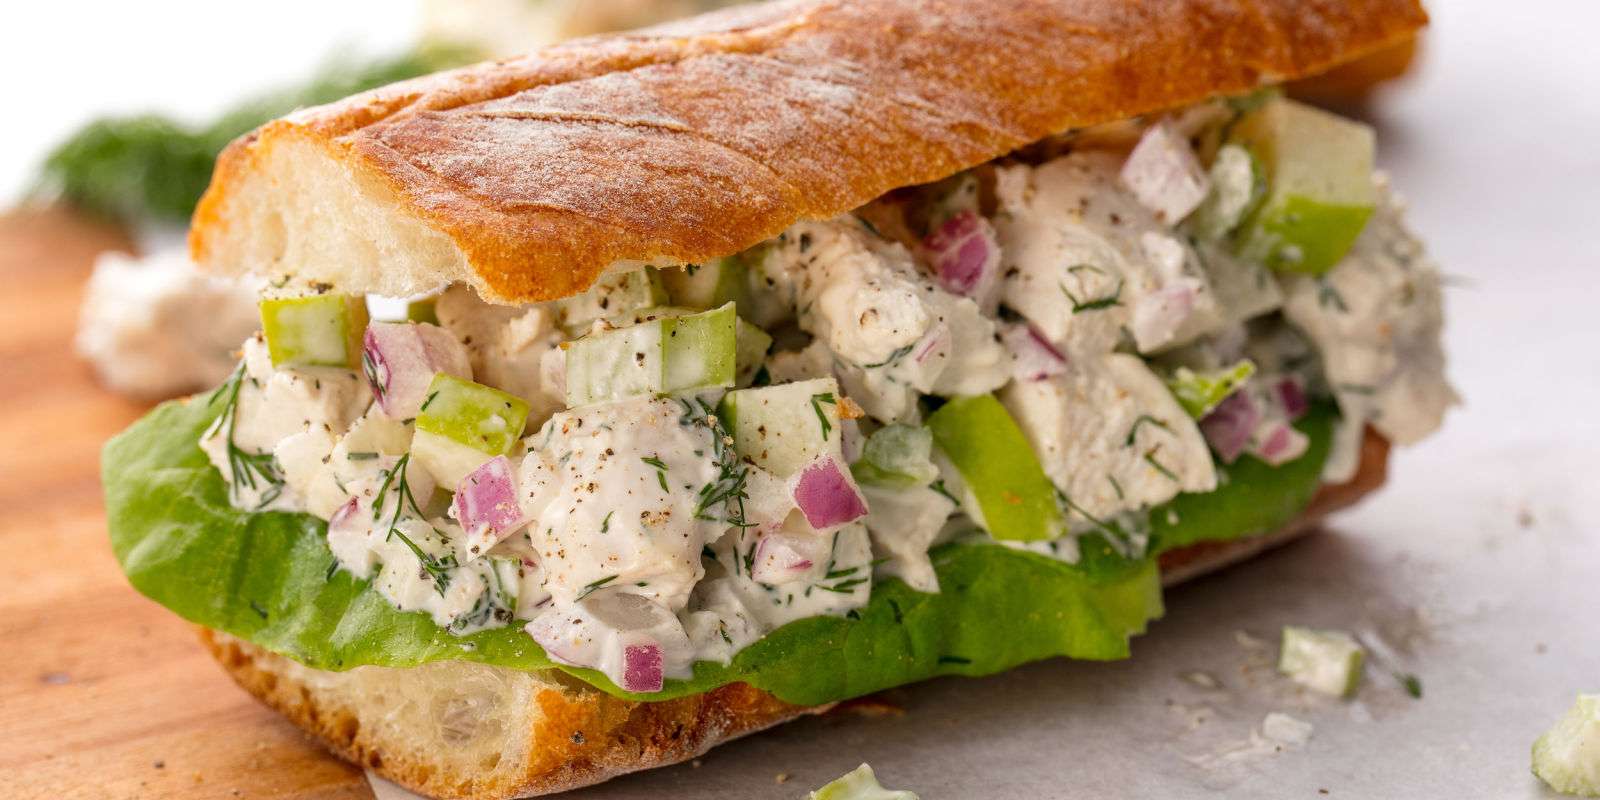 Best Chicken Salad Sandwich Recipe